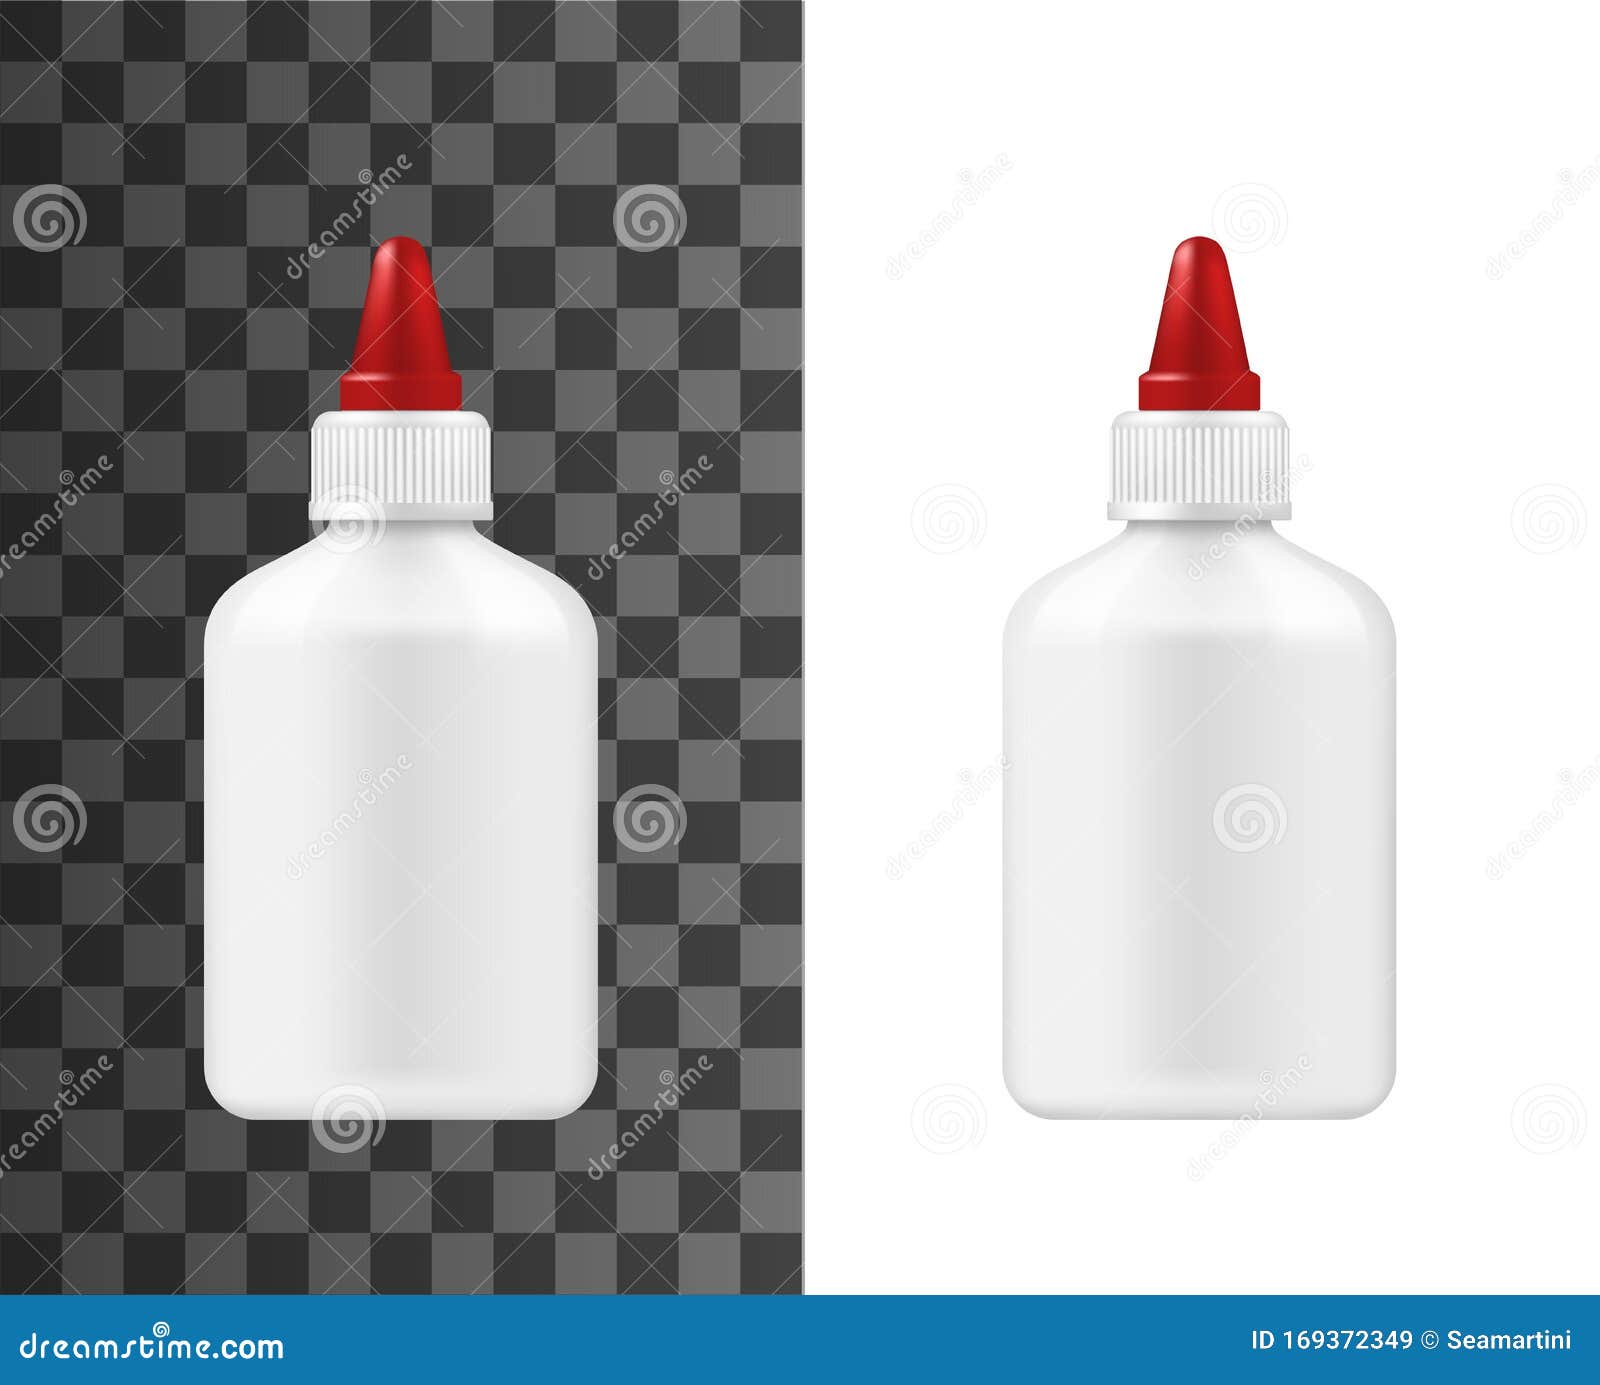 https://thumbs.dreamstime.com/z/bouteille-en-plastique-blanc-de-colle-superbe-maquette-paquets-contenant-avec-le-chapeau-rouge-mod%C3%A8le-la-d-forfait-super-isol%C3%A9-169372349.jpg